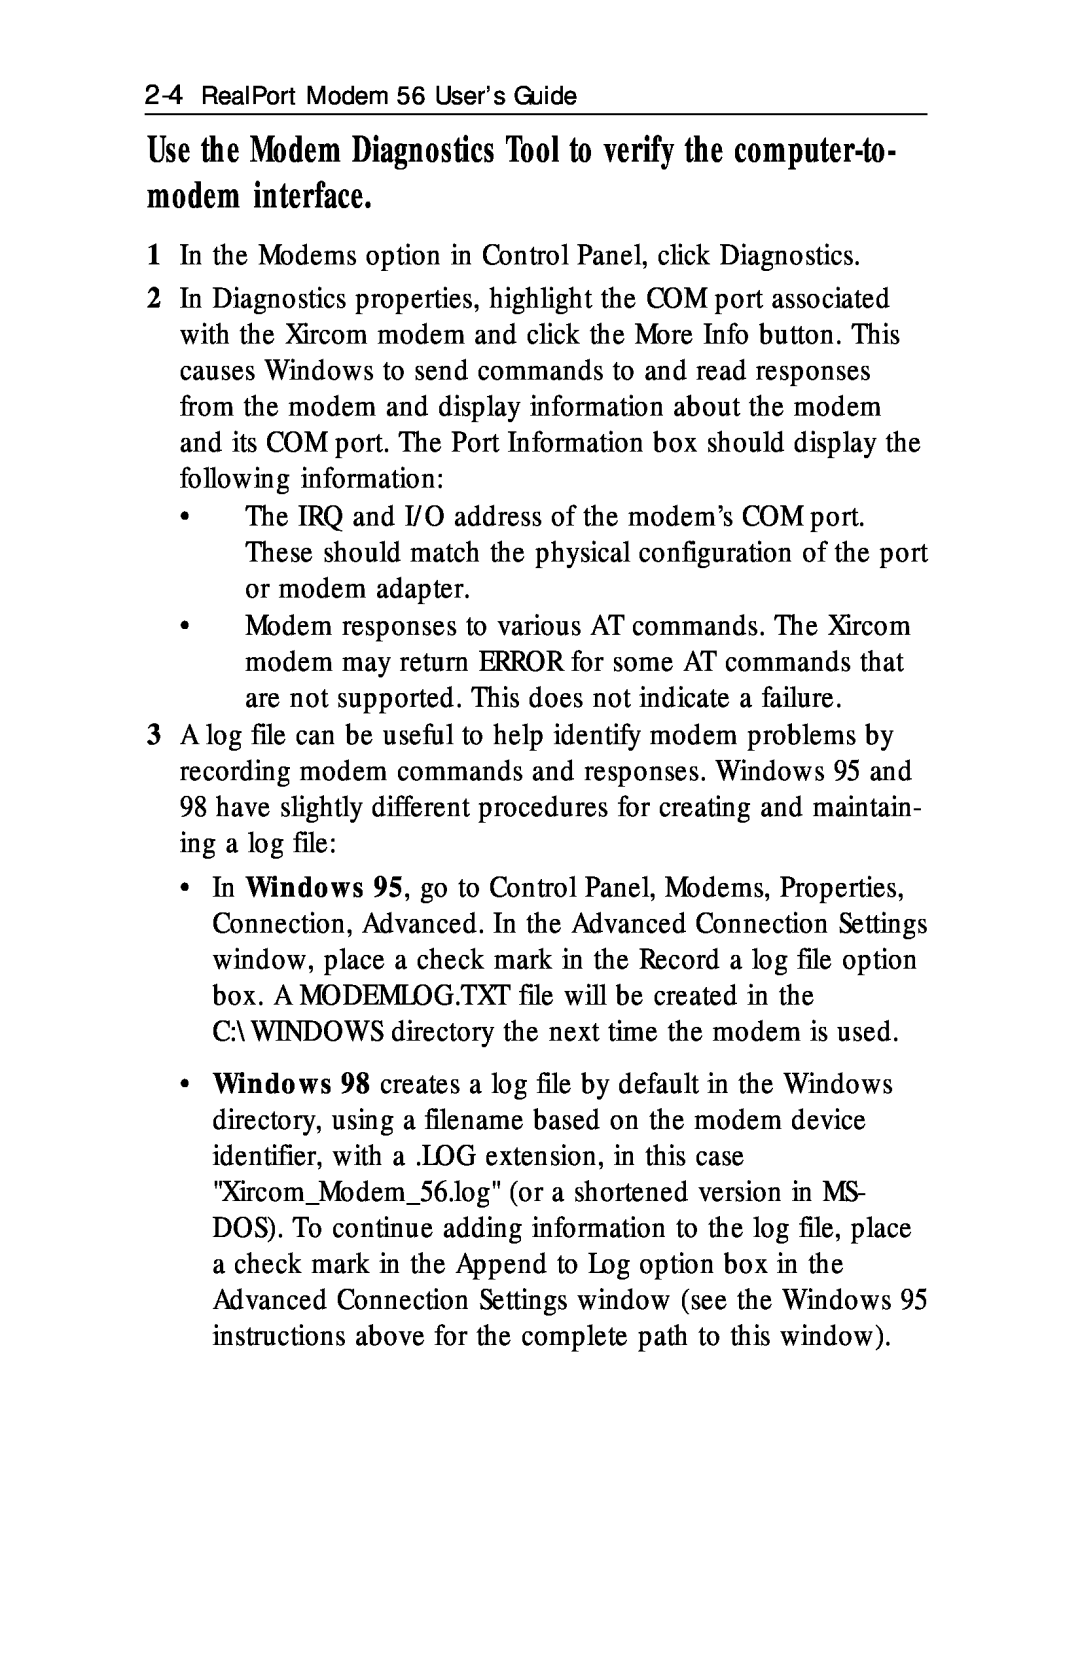 Xircom RM56V1 manual In the Modems option in Control Panel, click Diagnostics 